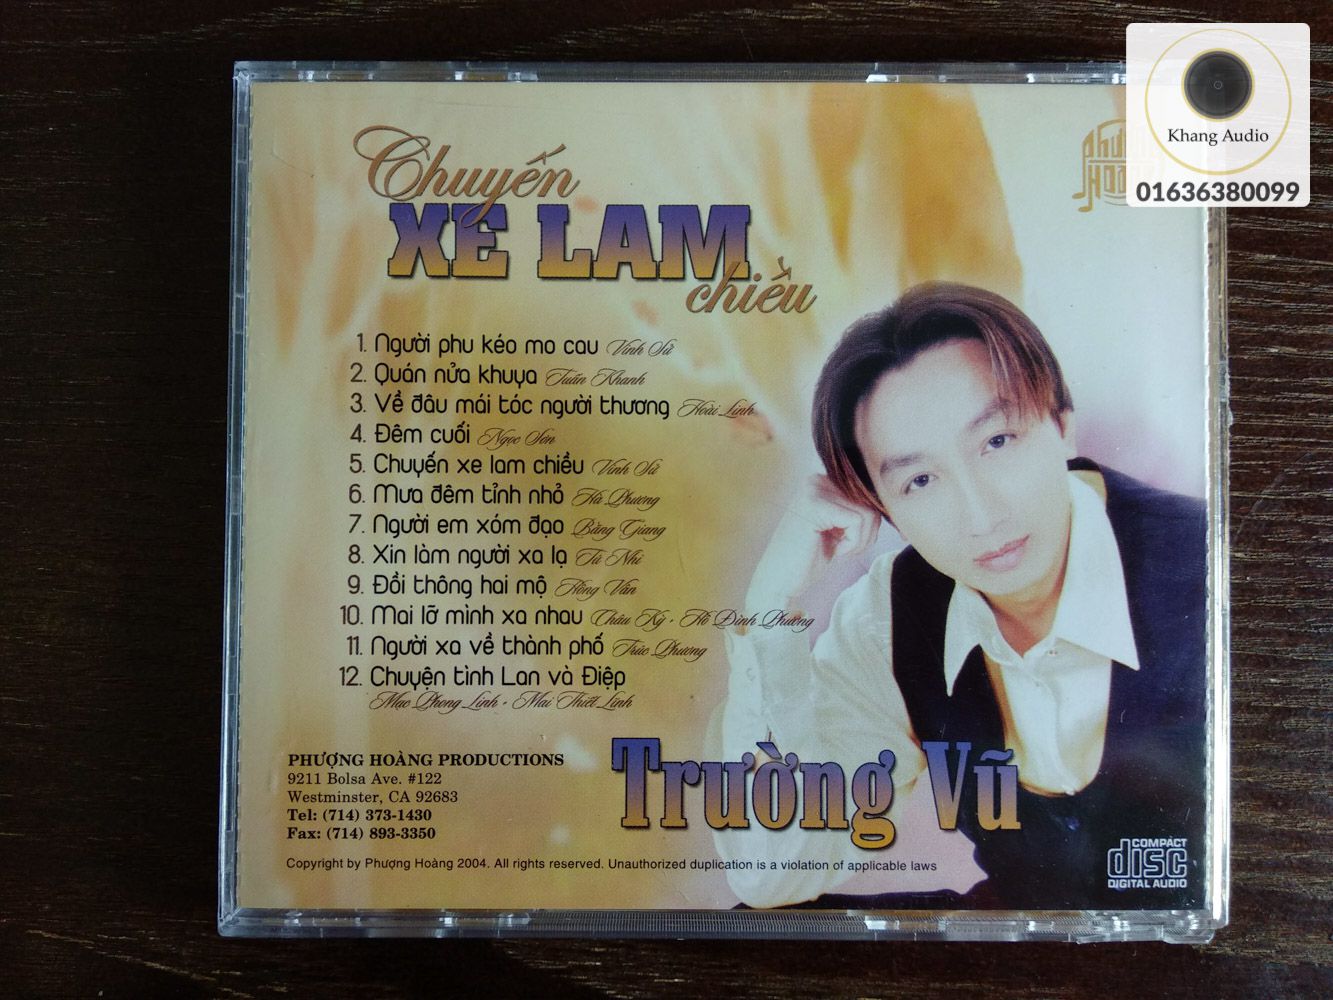 Chuyến Xe Lam Chiều - Trường Vũ Khang Audio 0336380099